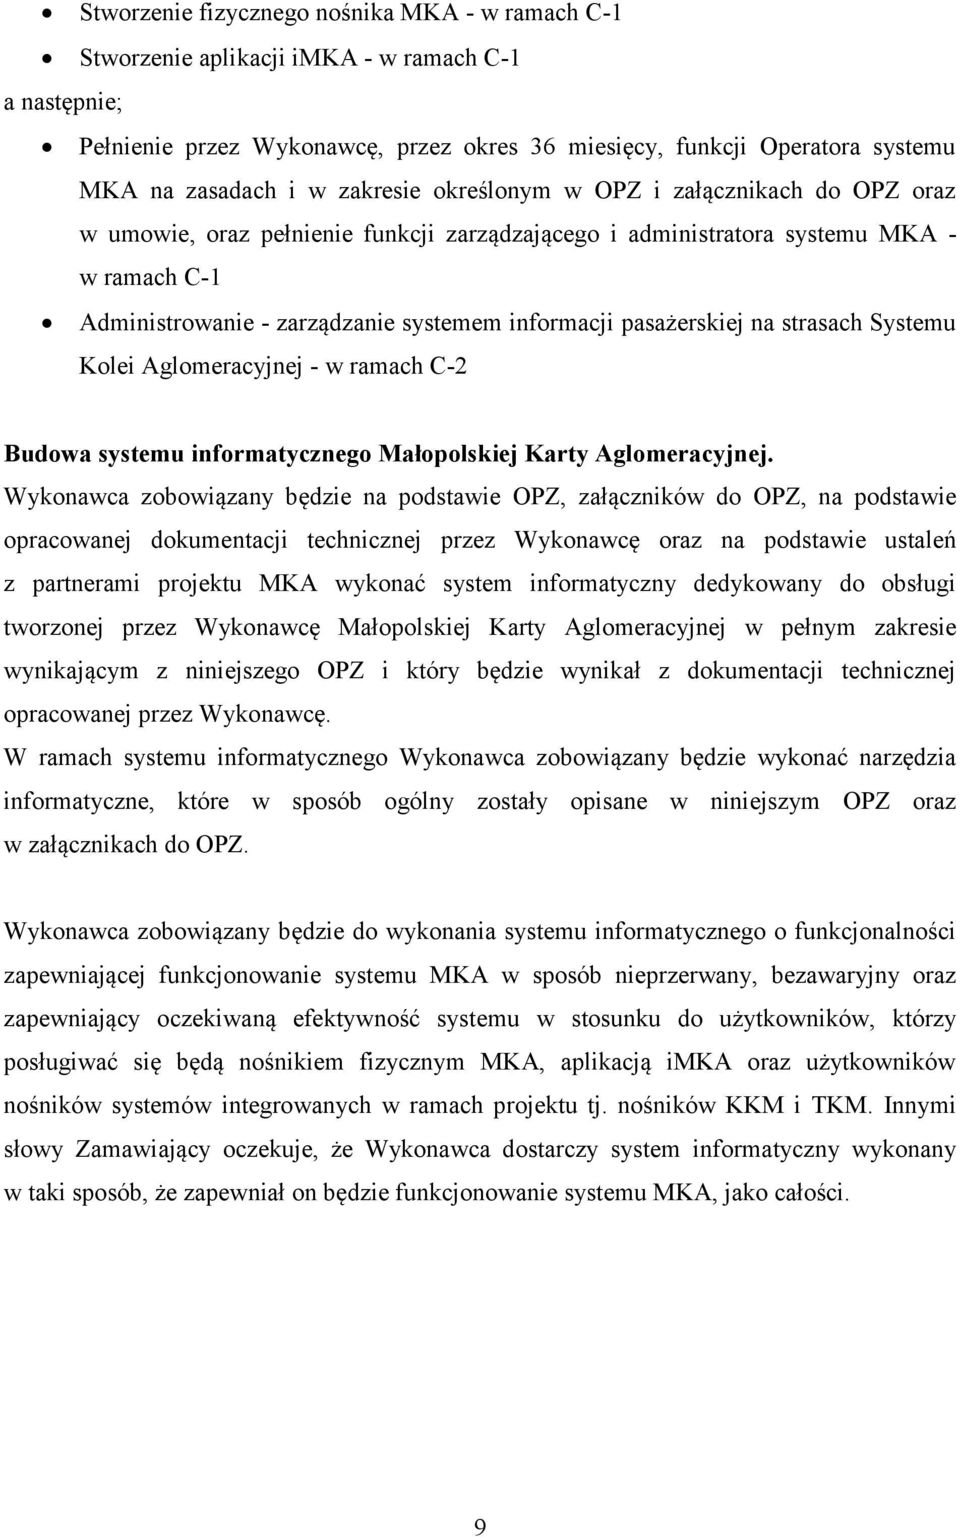 pasażerskiej na strasach Systemu Kolei Aglomeracyjnej - w ramach C-2 Budowa systemu informatycznego Małopolskiej Karty Aglomeracyjnej.